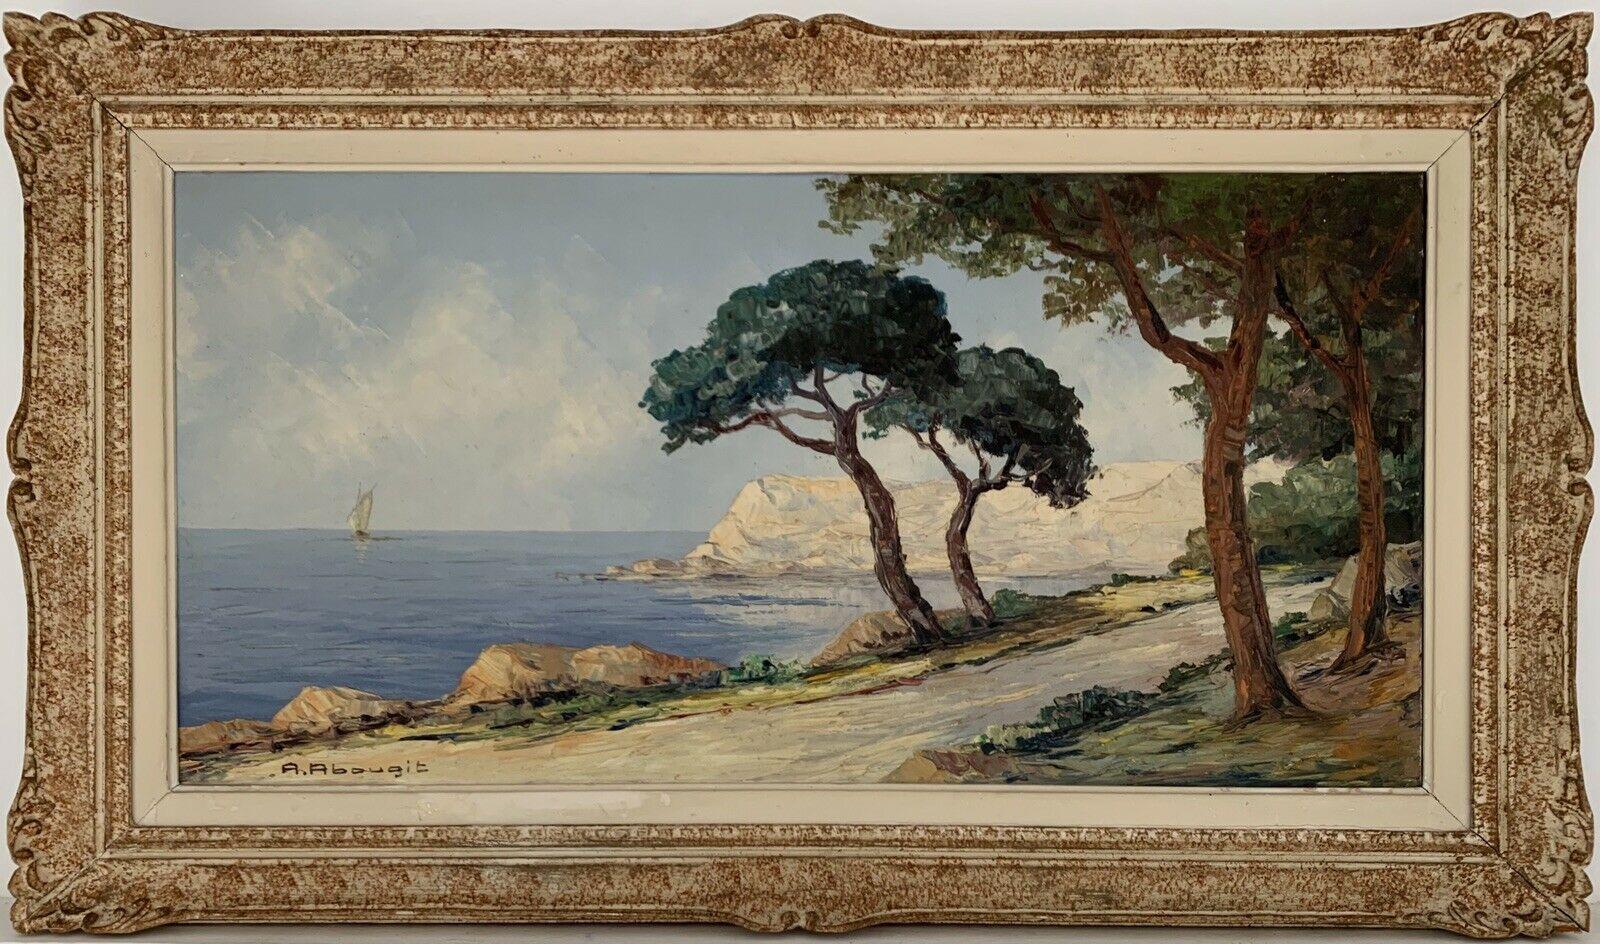 Landscape Painting A Abougit - HUGE PIÈCE D'OREILLE FRANÇAISE SIGNÉE D' IMPRESSIONNISTE DES ANNÉES 1950 - COTE D'AZUR TRANQUIL COASTLINE